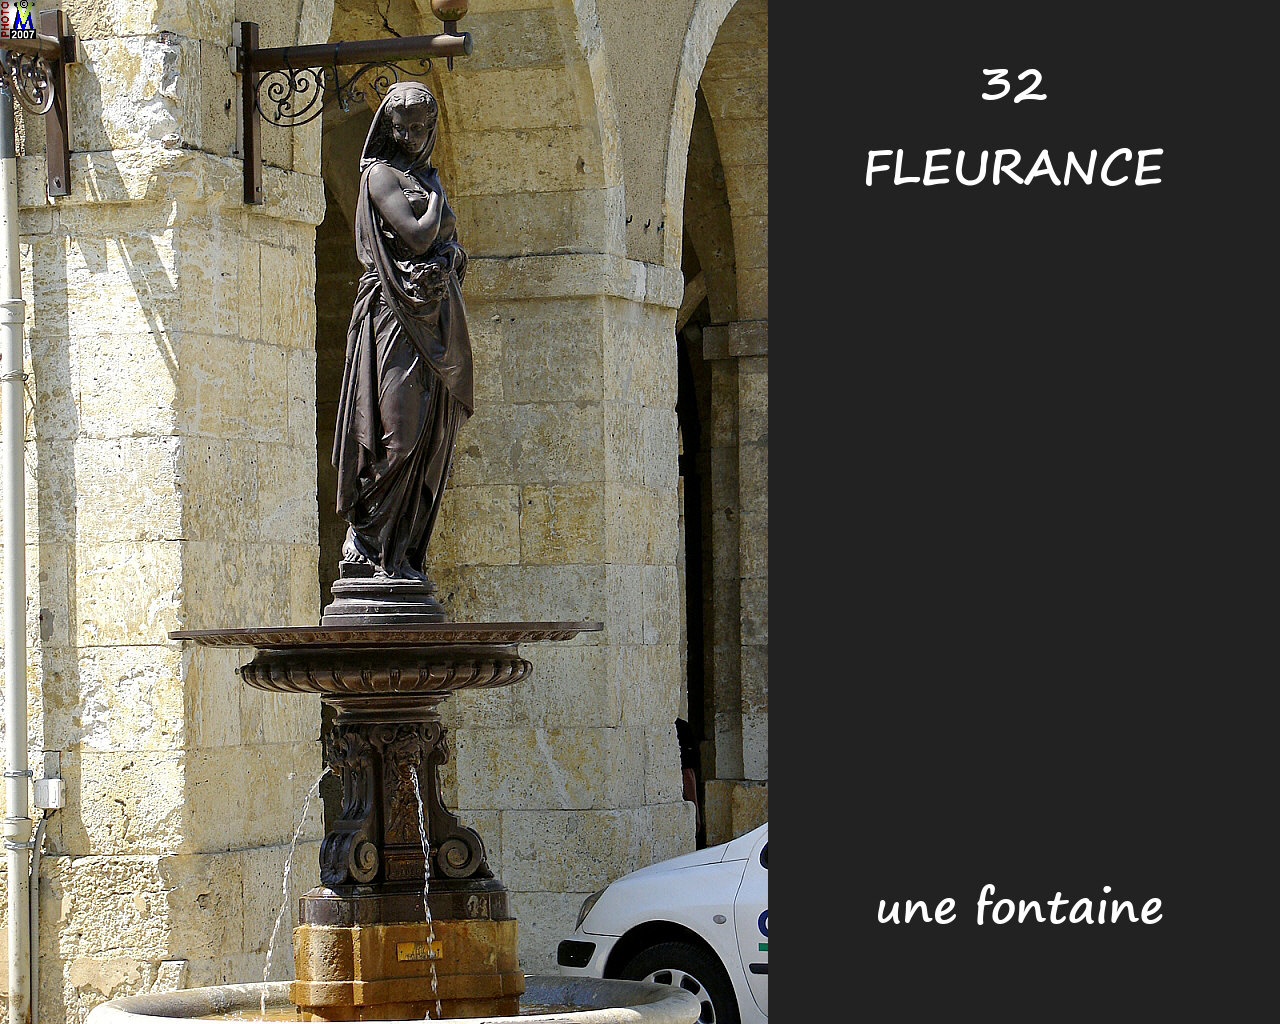 32FLEURANCE_fontaine_100.jpg